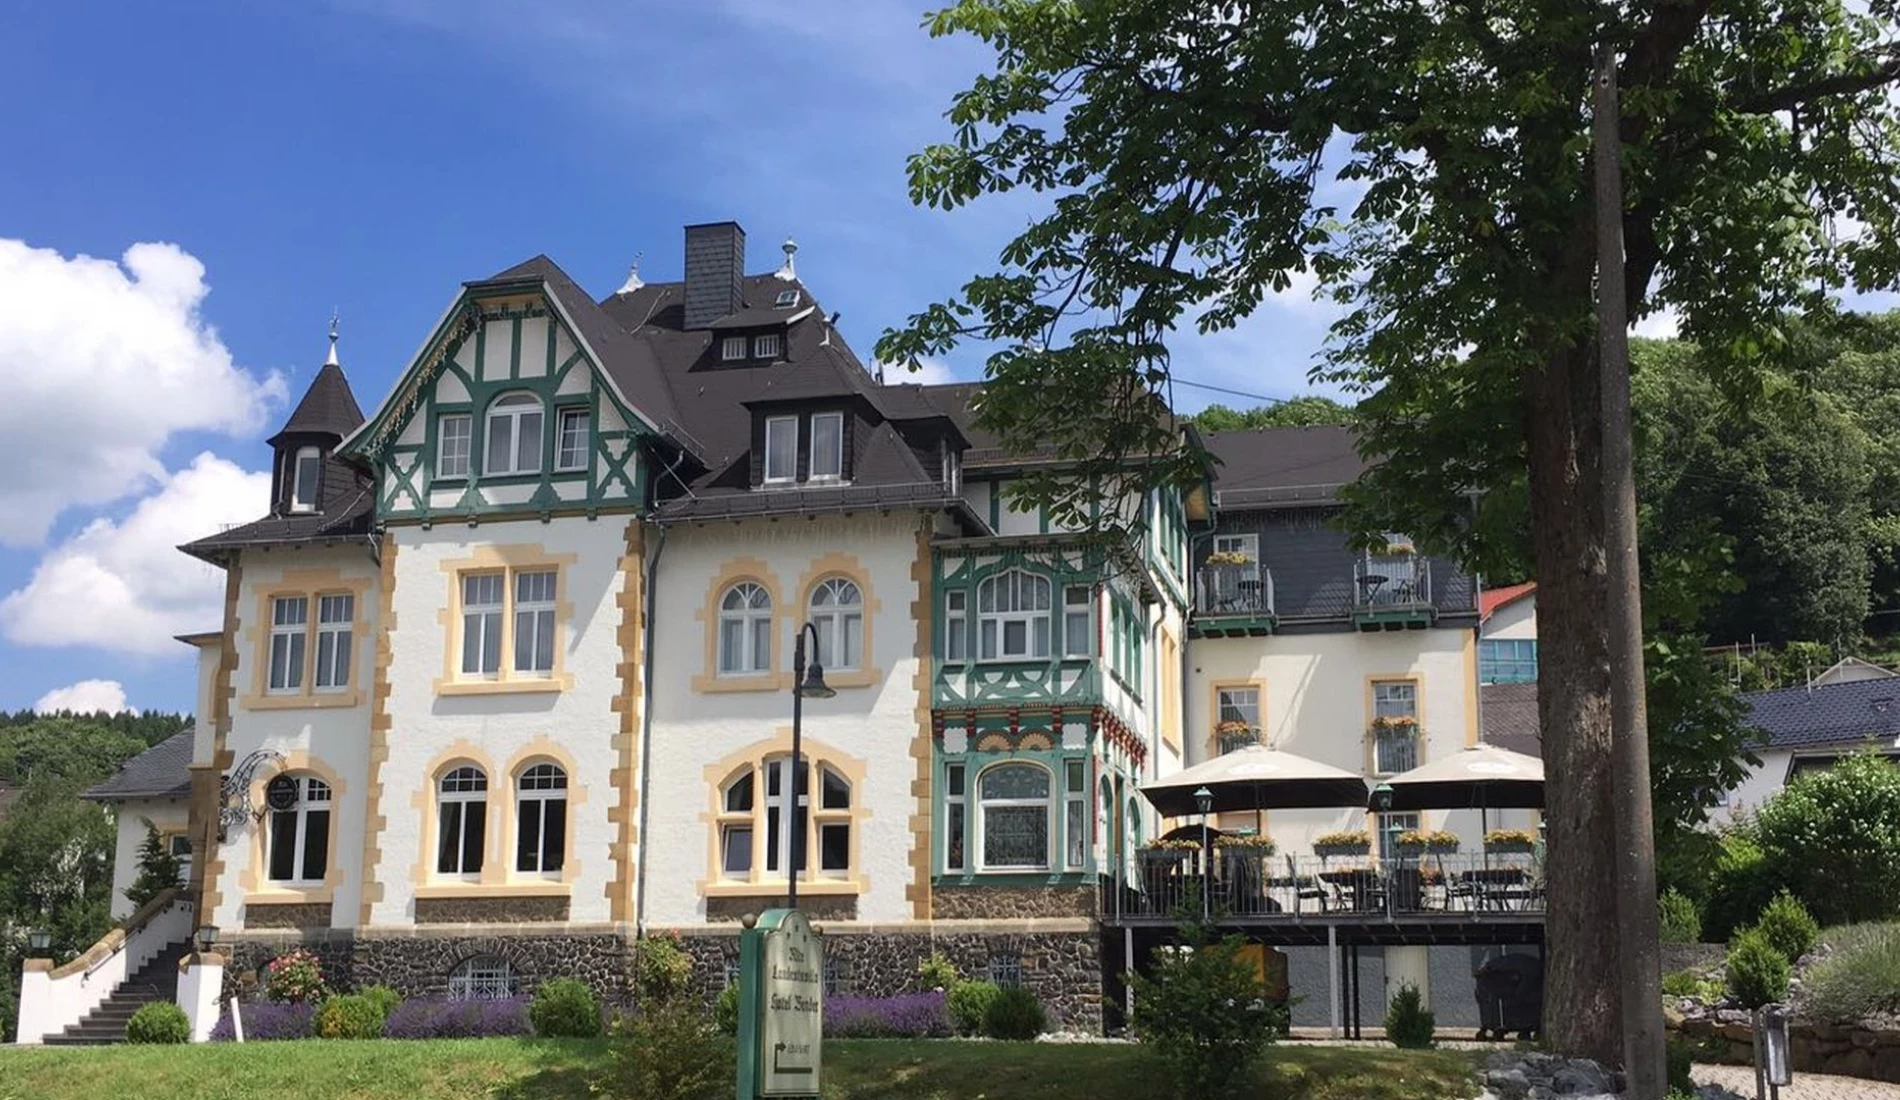 3 Tage Wandern im schönen Westerwald – Alte Landratsvilla Hotel Bender  (3 Sterne) in Westerburg, Rheinland-Pfalz inkl. Frühstück